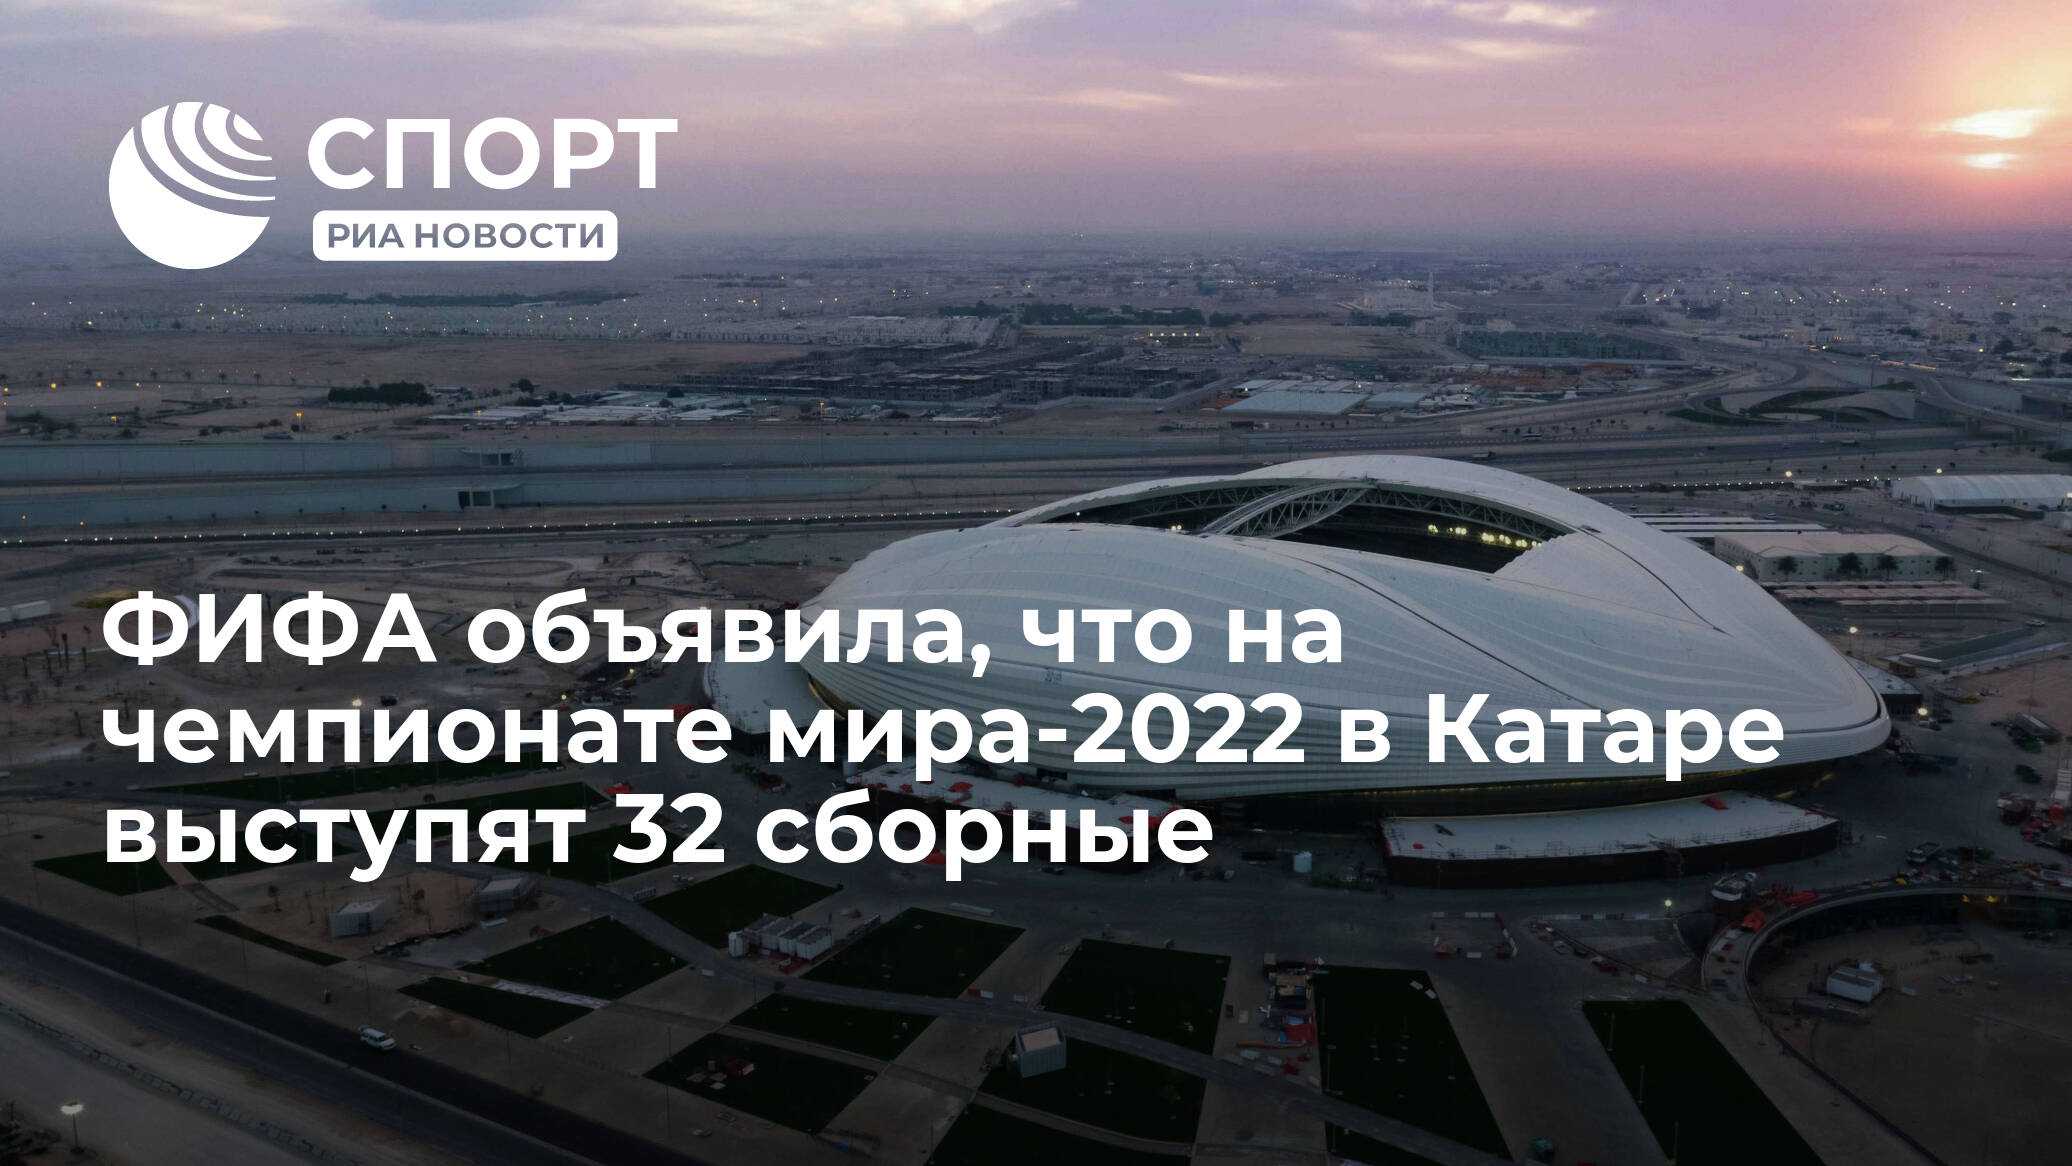 8 главных блюд 2022 года / что станет трендом – статья из рубрики "еда и развлечения" на food.ru